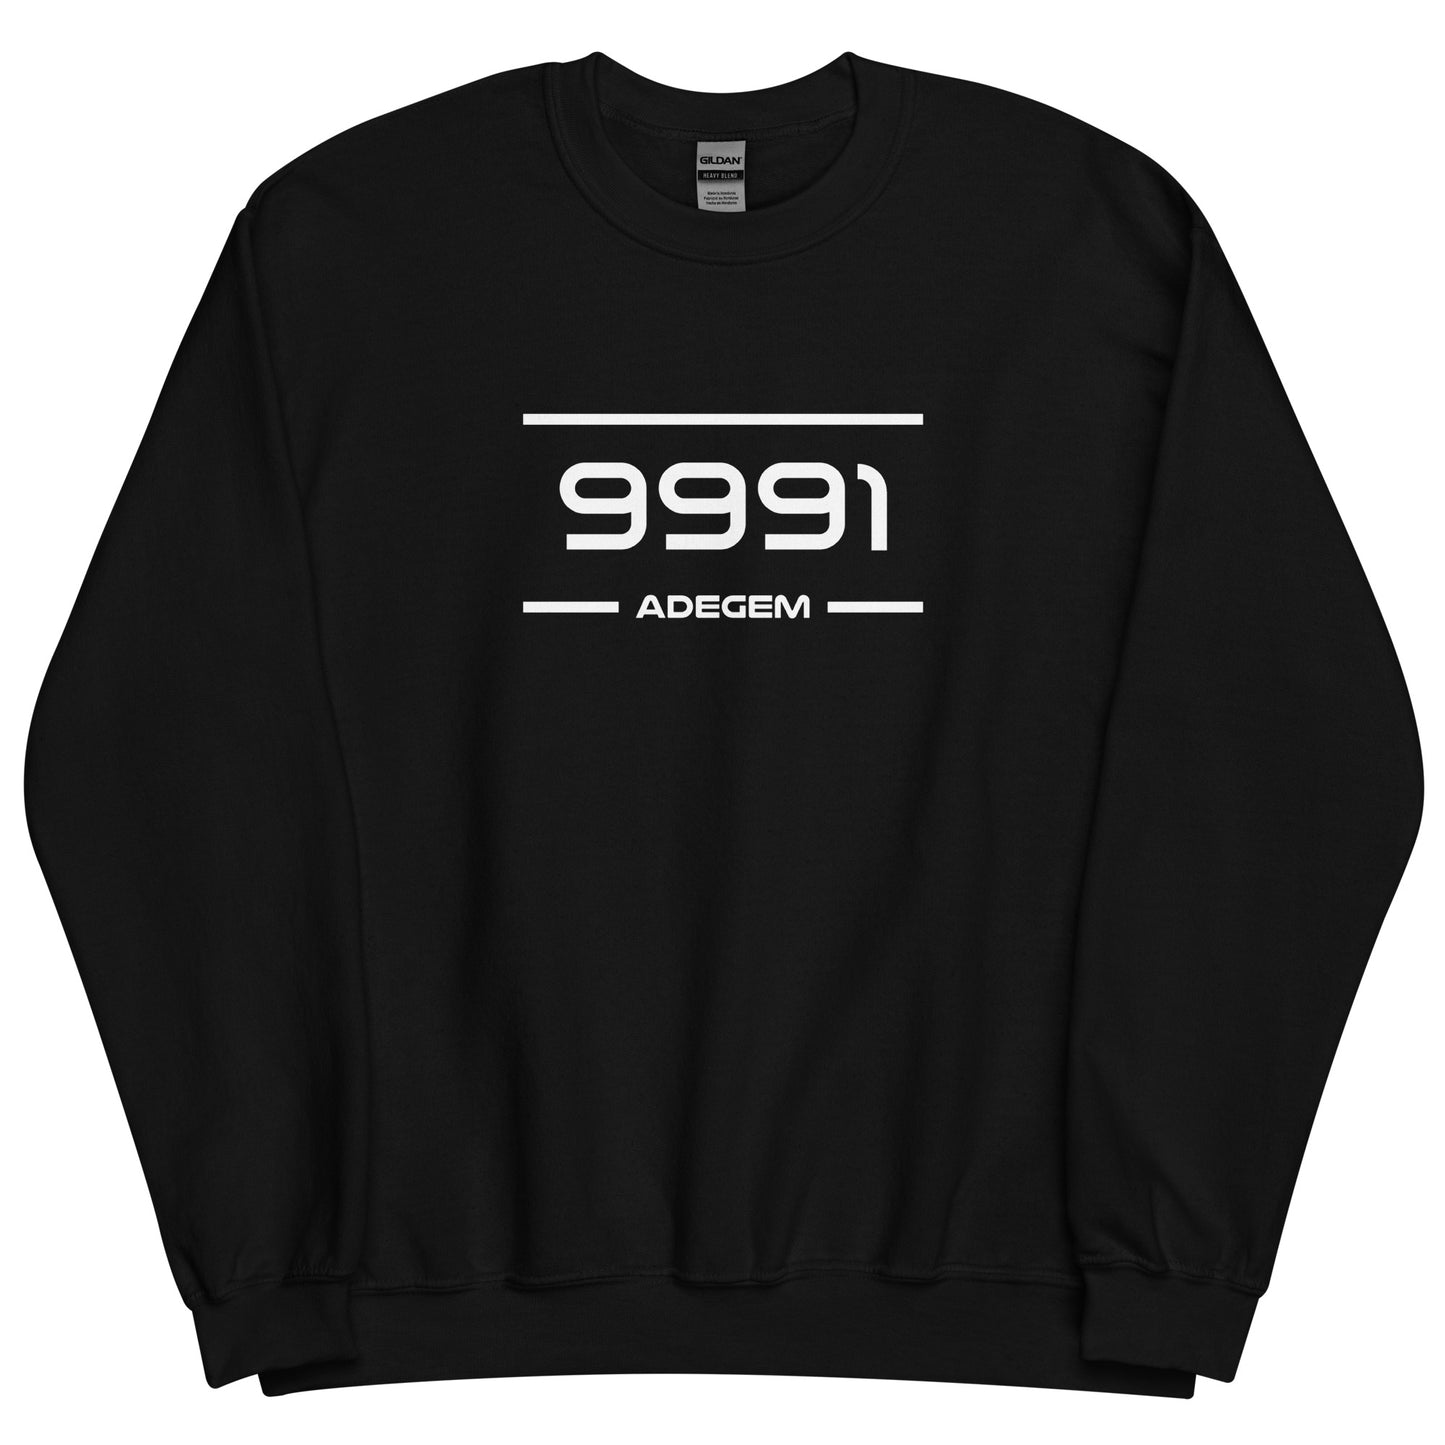 Sweater - 9991 - Adegem (M/V)